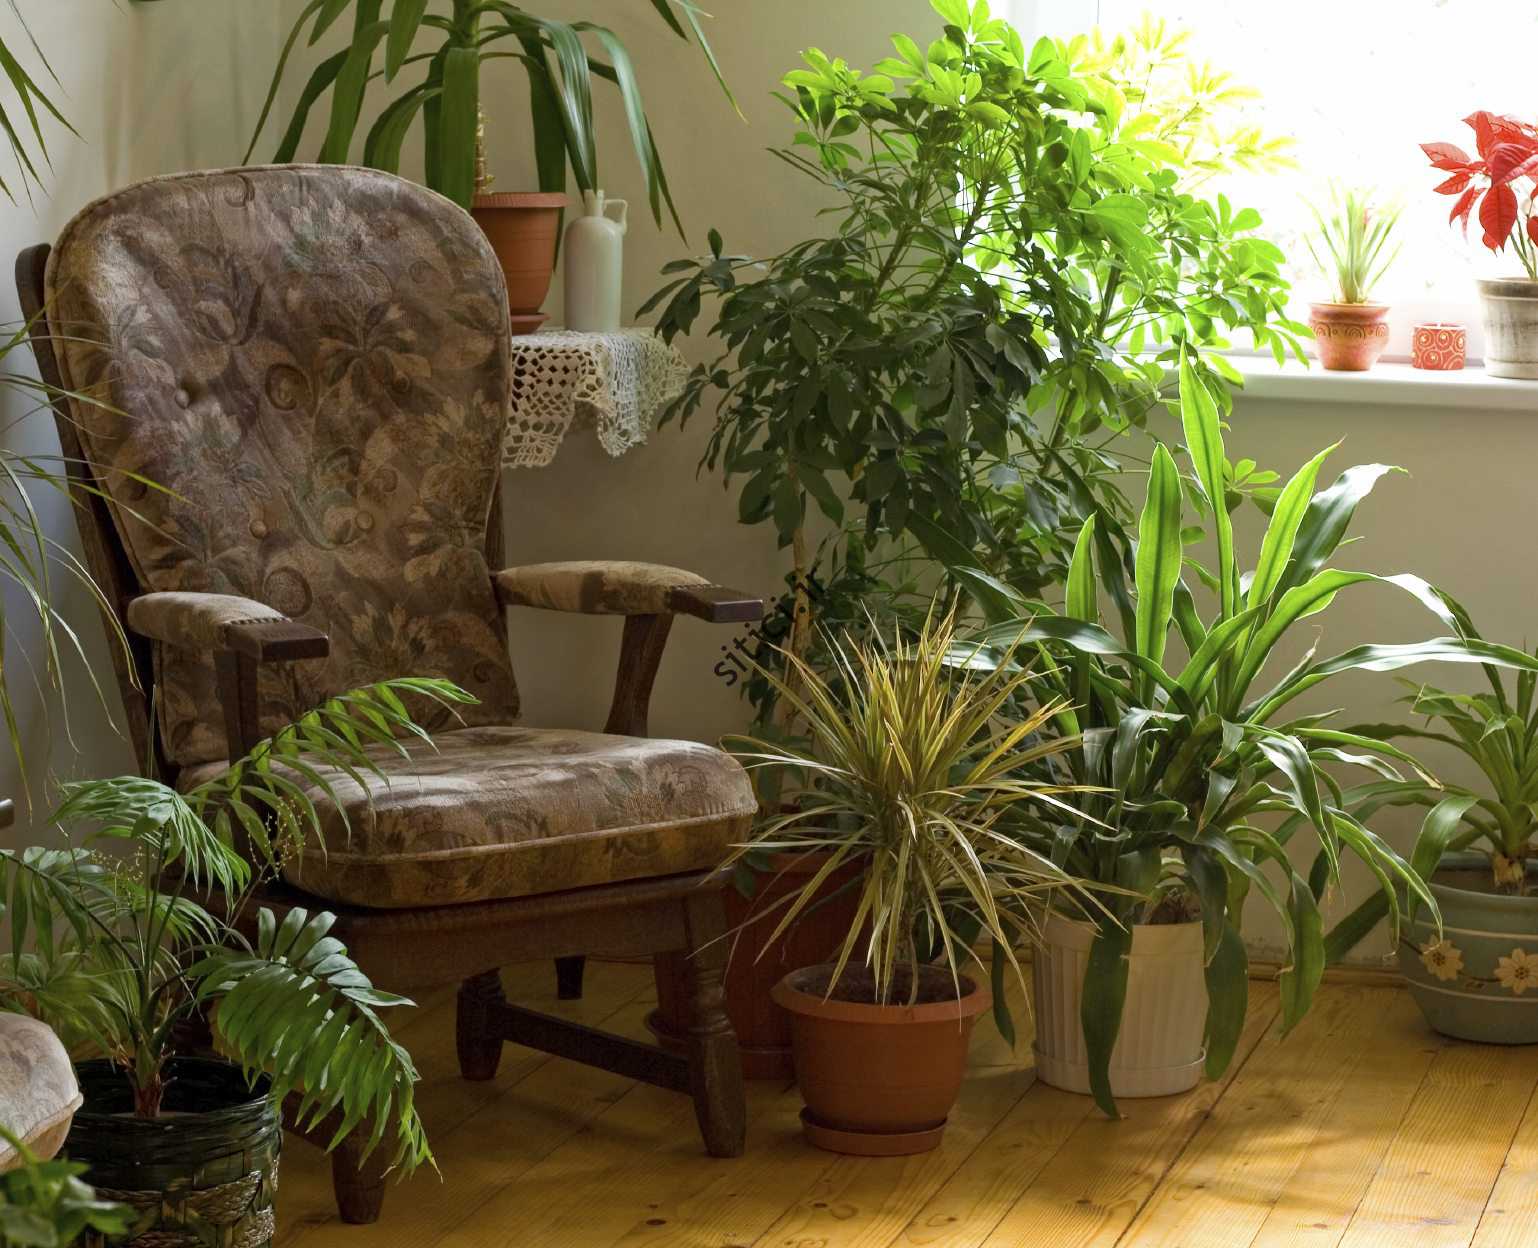 آیا گیاهان آپارتمانی بر سلامتی تأثیر می گذارند؟